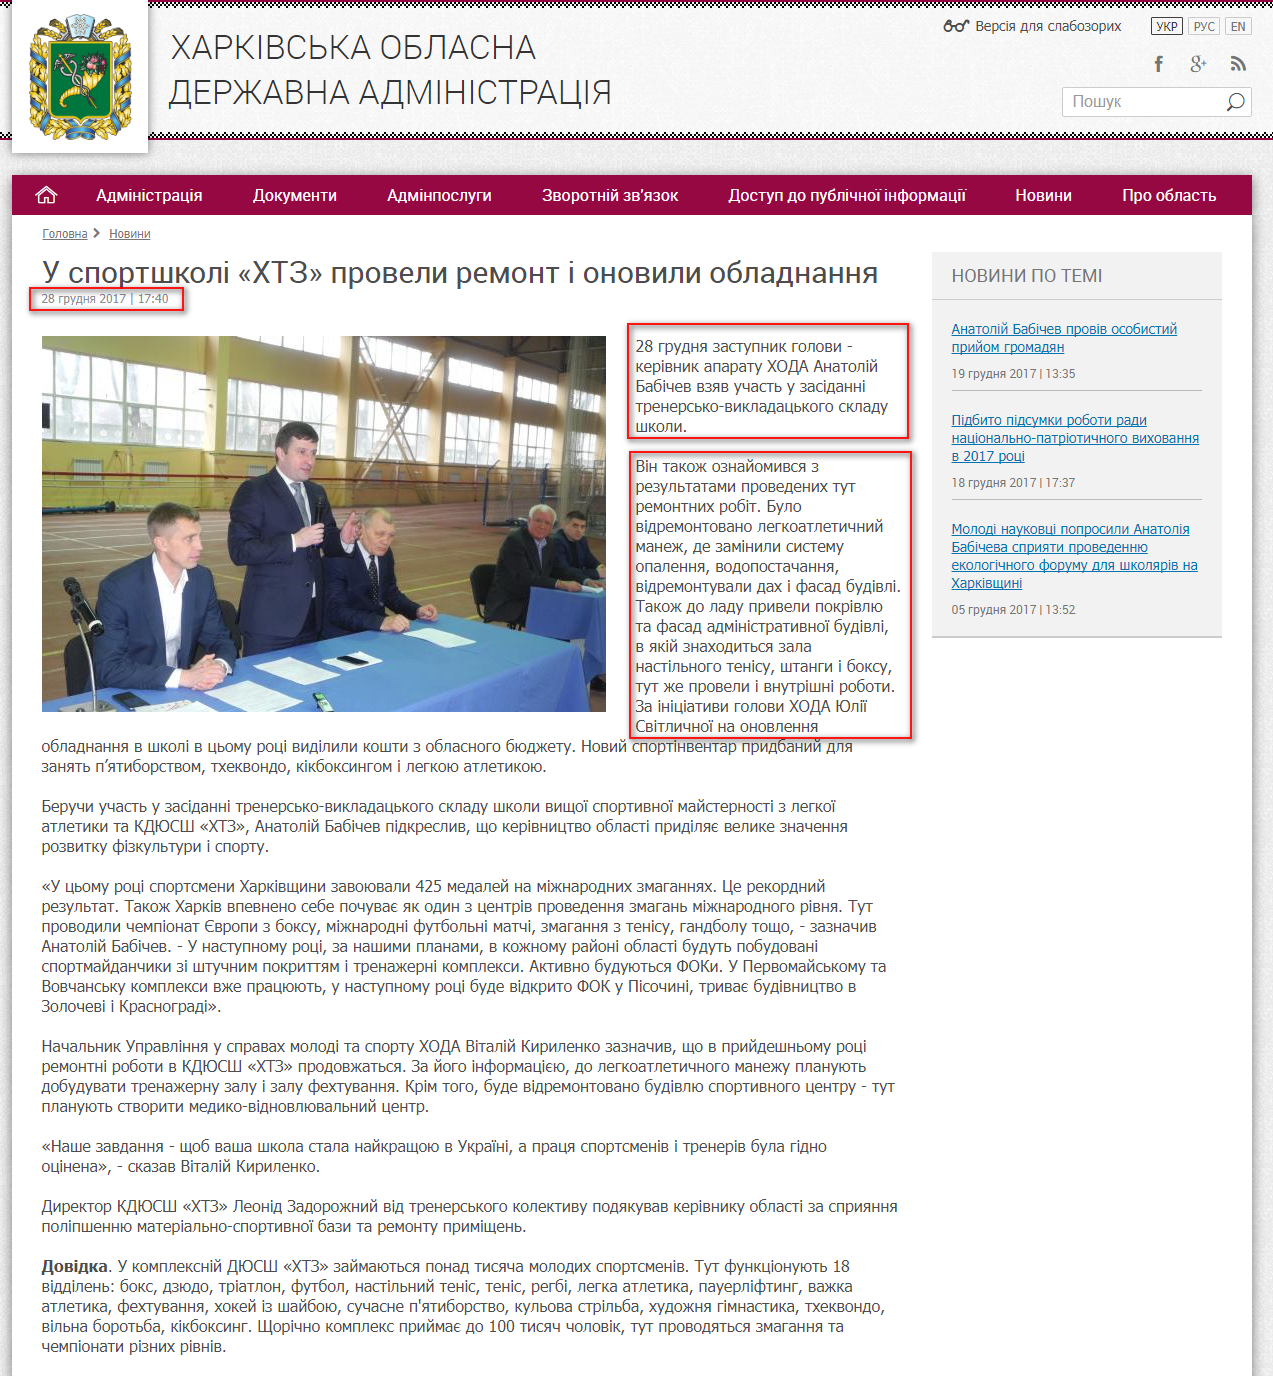 http://kharkivoda.gov.ua/news/90375